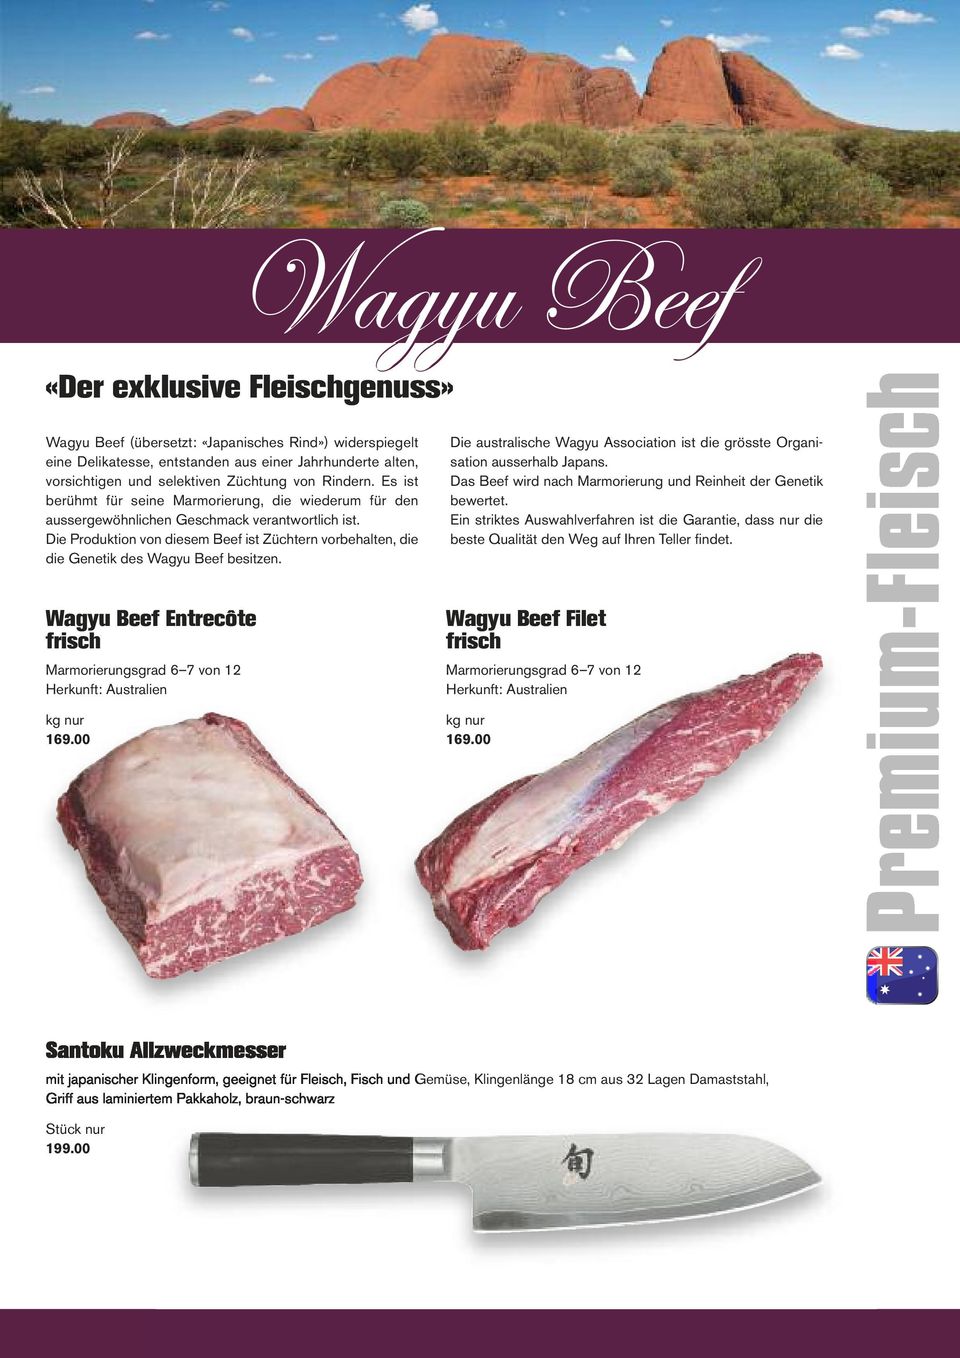 Die Produktion von diesem Beef ist Züchtern vorbehalten, die die Genetik des Wagyu Beef besitzen. Die australische Wagyu Association ist die grösste Organi - sation ausserhalb Japans.